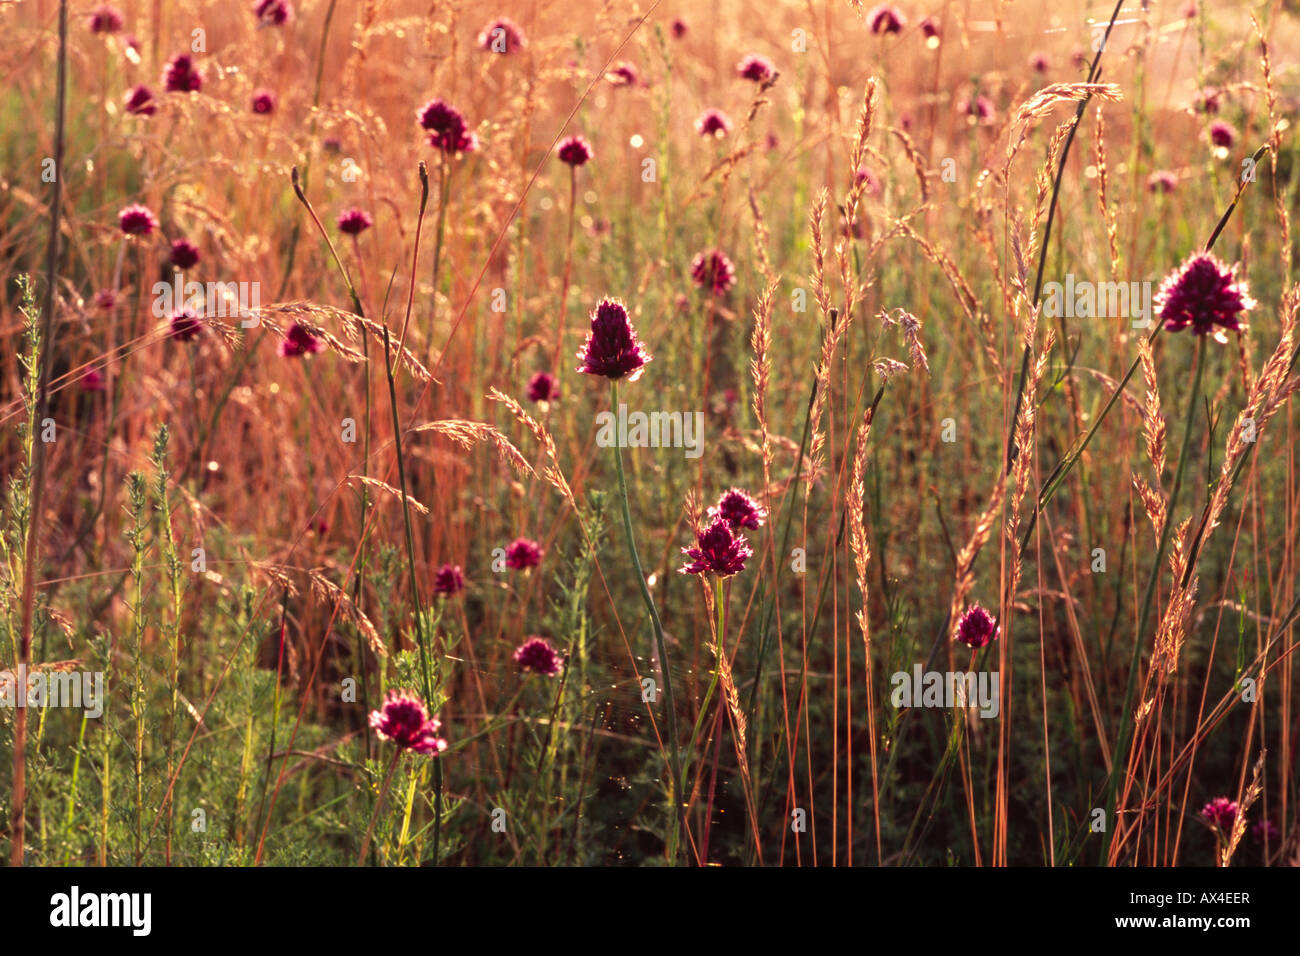 Kalkstein-Grünland mit Runde Spitze Lauch (Allium Sphaerocephalon) Blüte. Auf dem Causse de Gramat, viel Region, Frankreich. Stockfoto